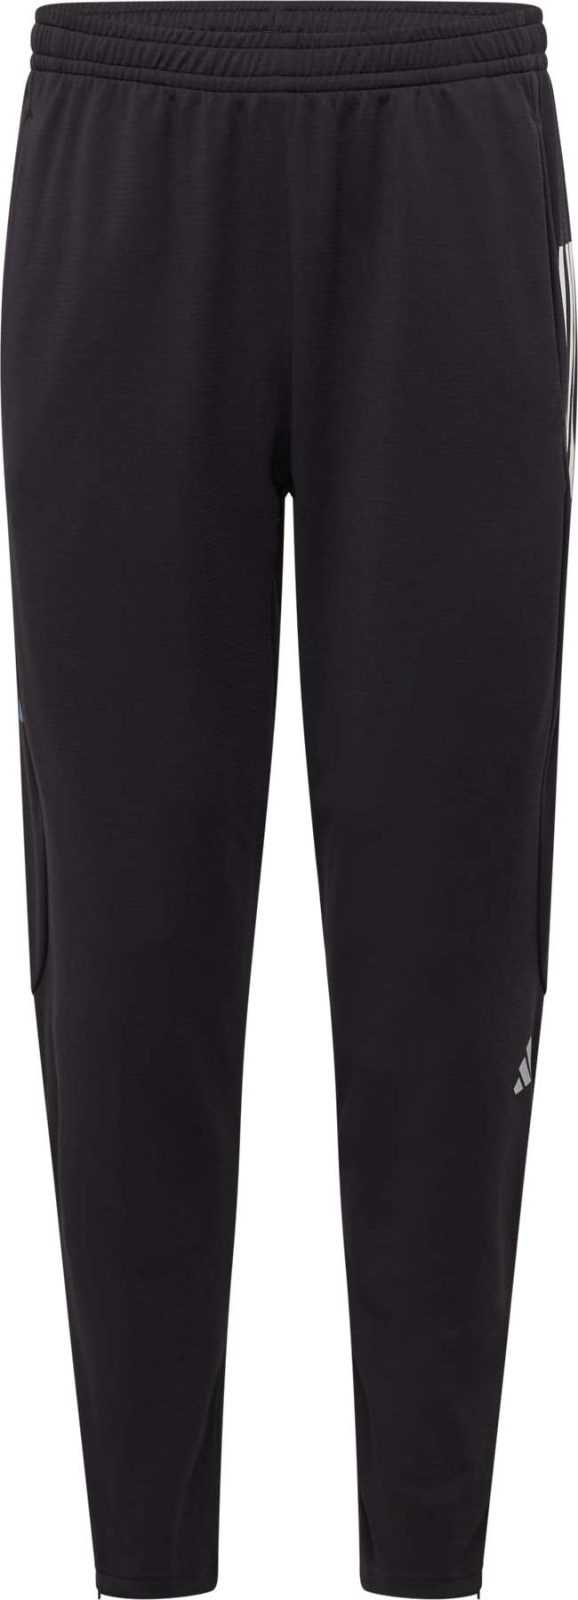 ADIDAS PERFORMANCE Sportovní kalhoty fialová / černá / bílá